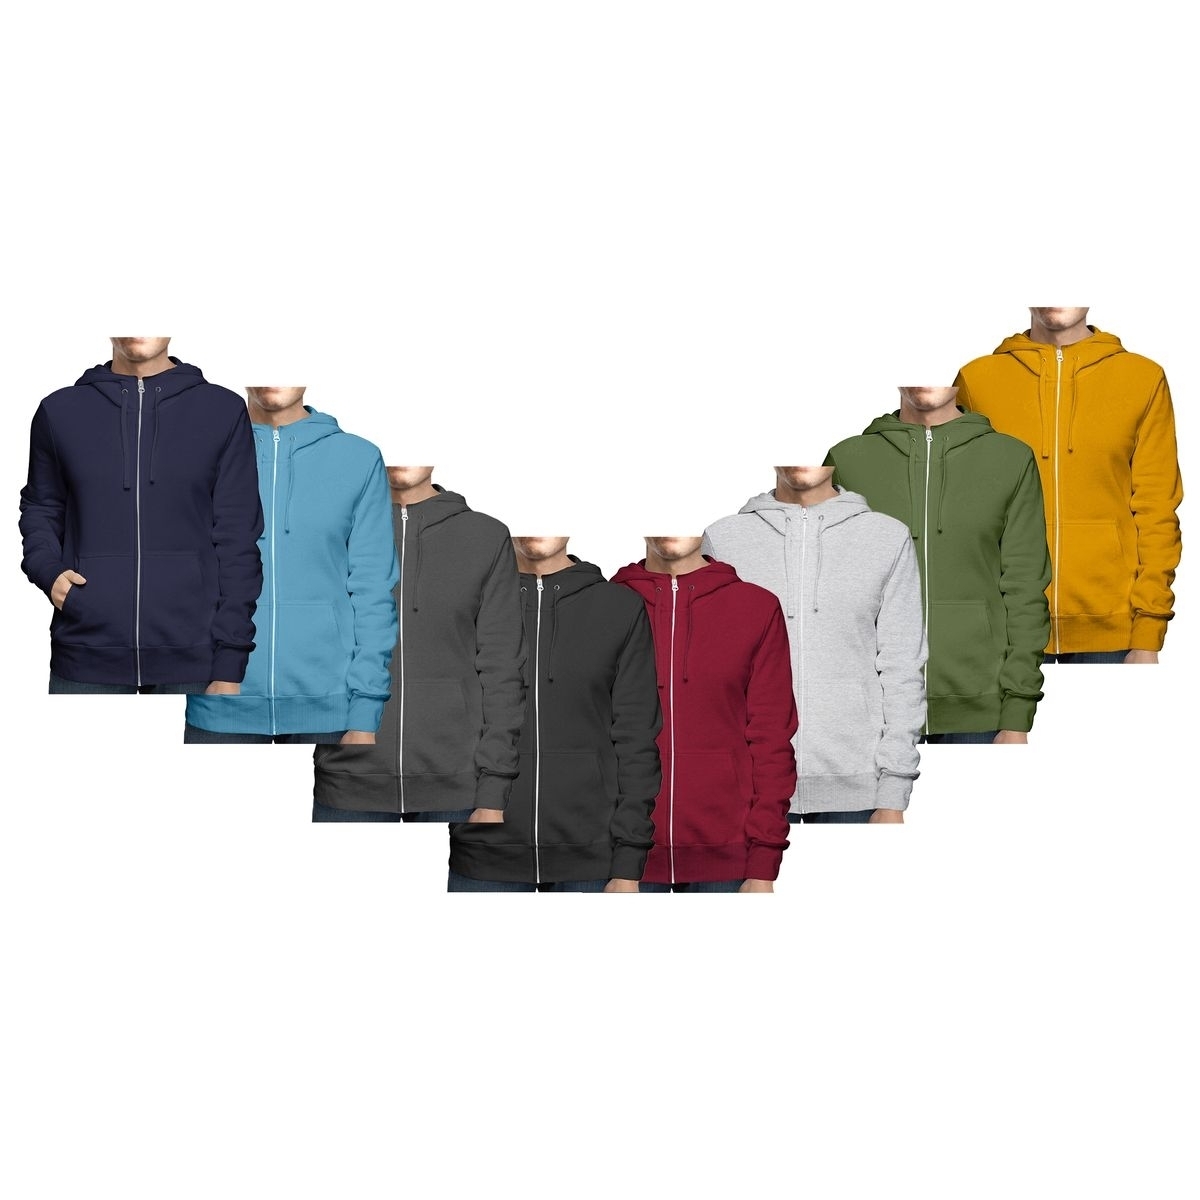 Men's Winter Warm Cozy Full Zip-Up Fleece Lined Soft Hoodie Sweatshirt - Black, Xx-large